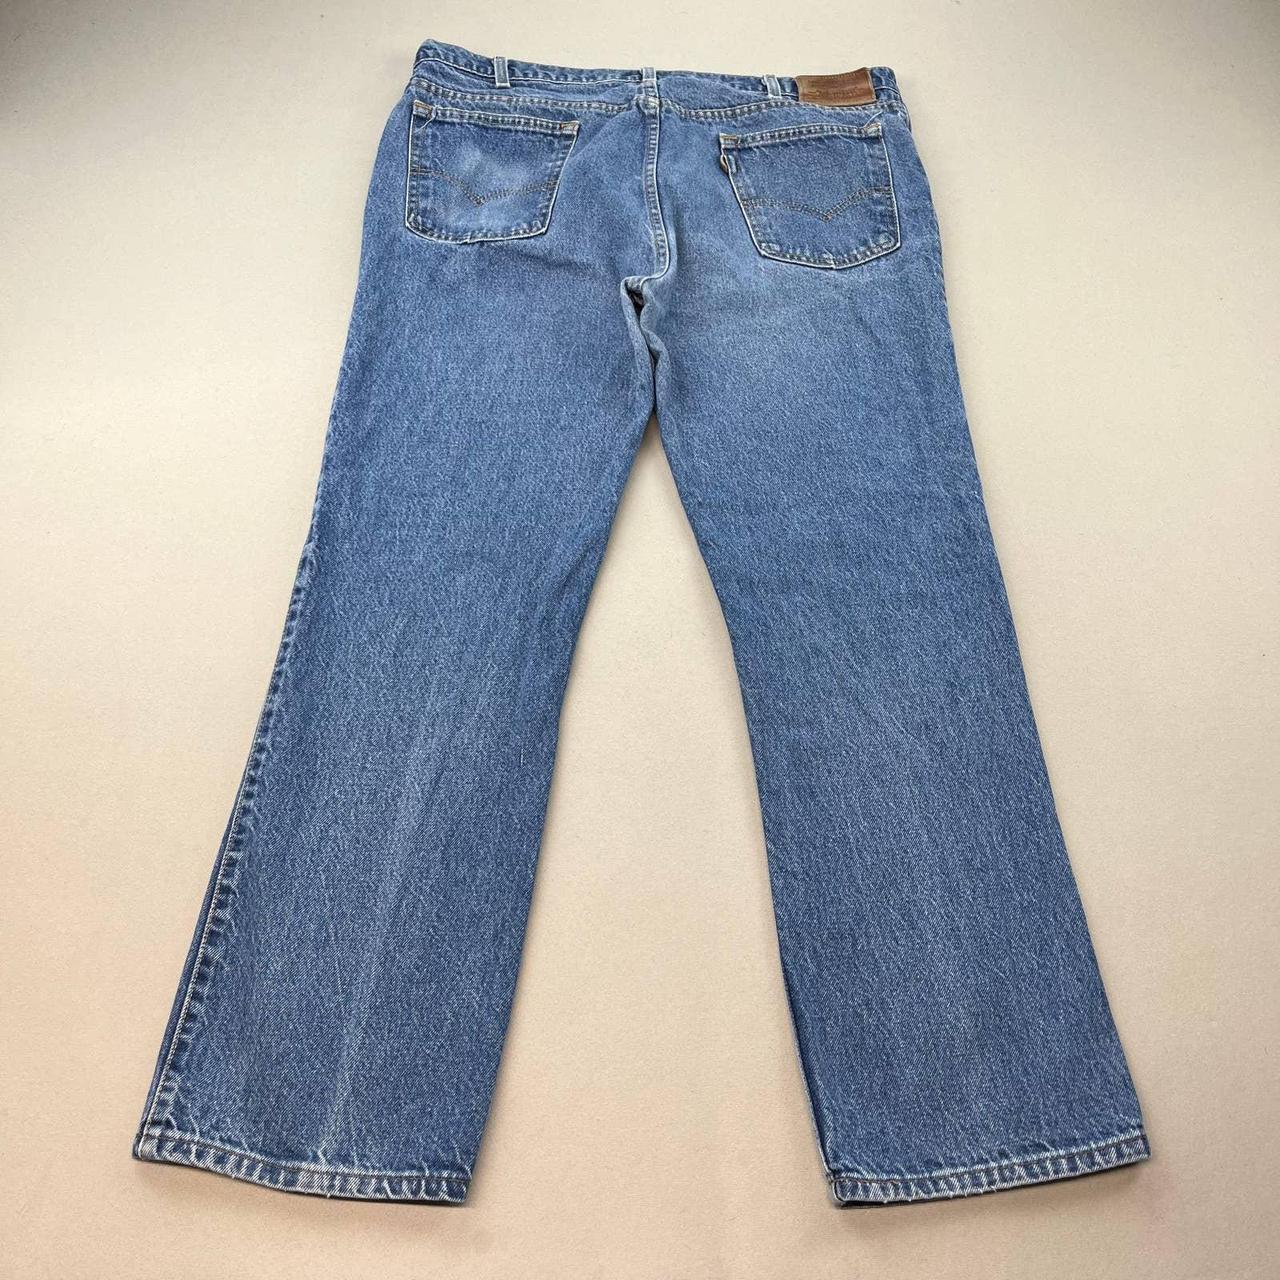 Vintage Levis Two Horse Jeans Mens 40x30 Blue Denim... - Depop